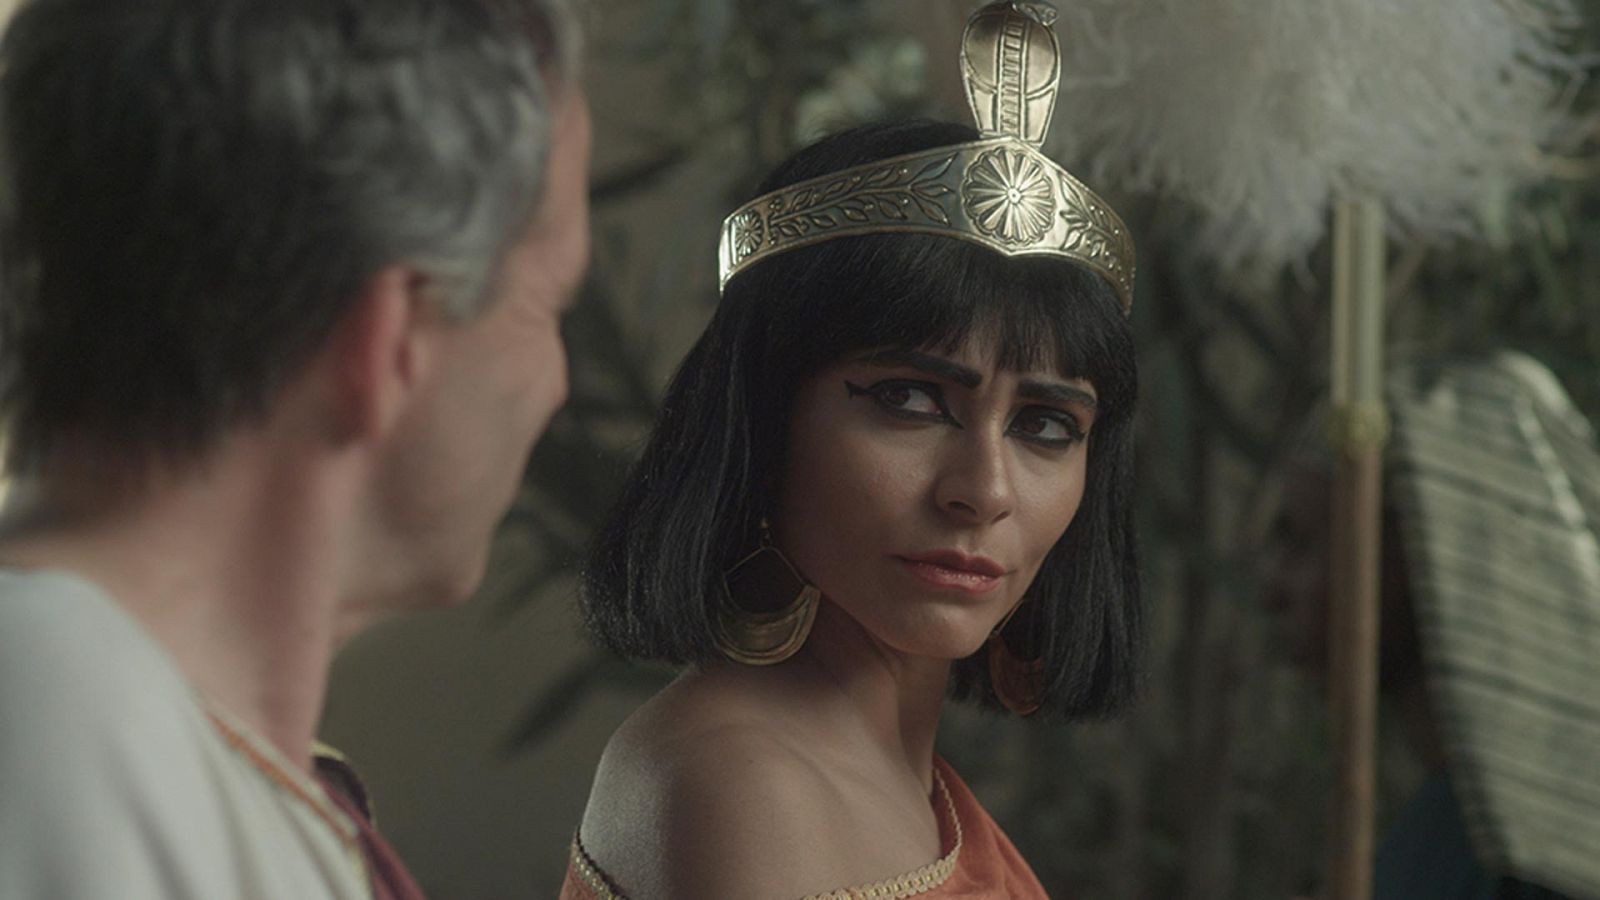 Mujeres que hicieron historia - Cleopatra - Documental en RTVE